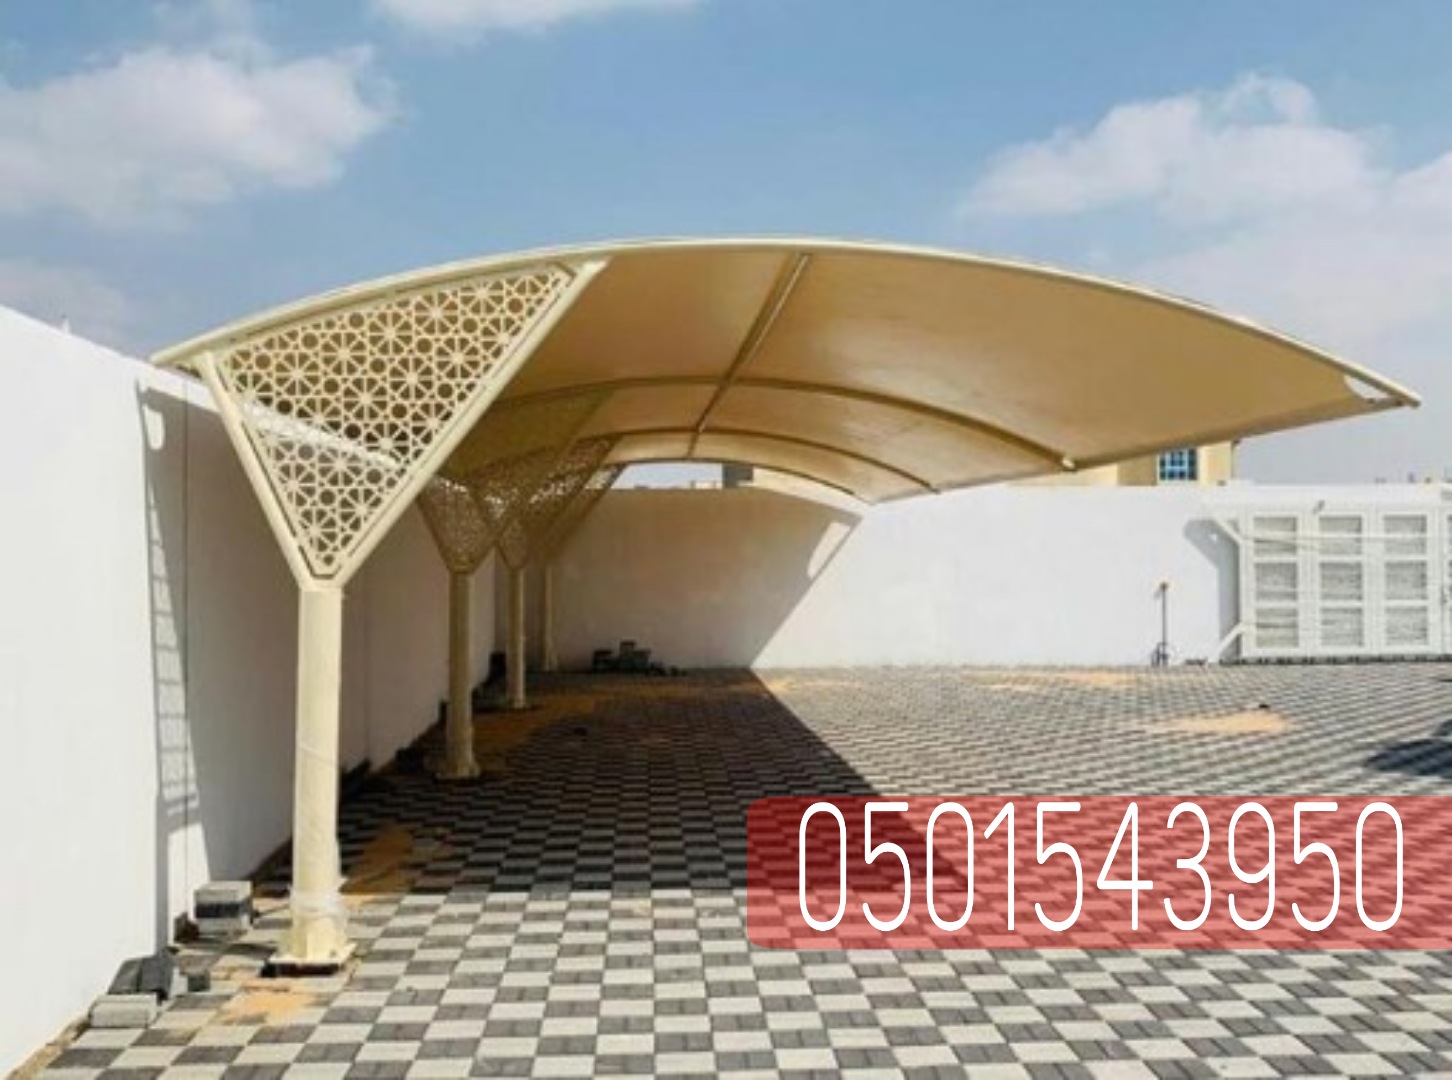 حداد مظلات سيارات في جدة , 0501543950  P_22385r1ka10